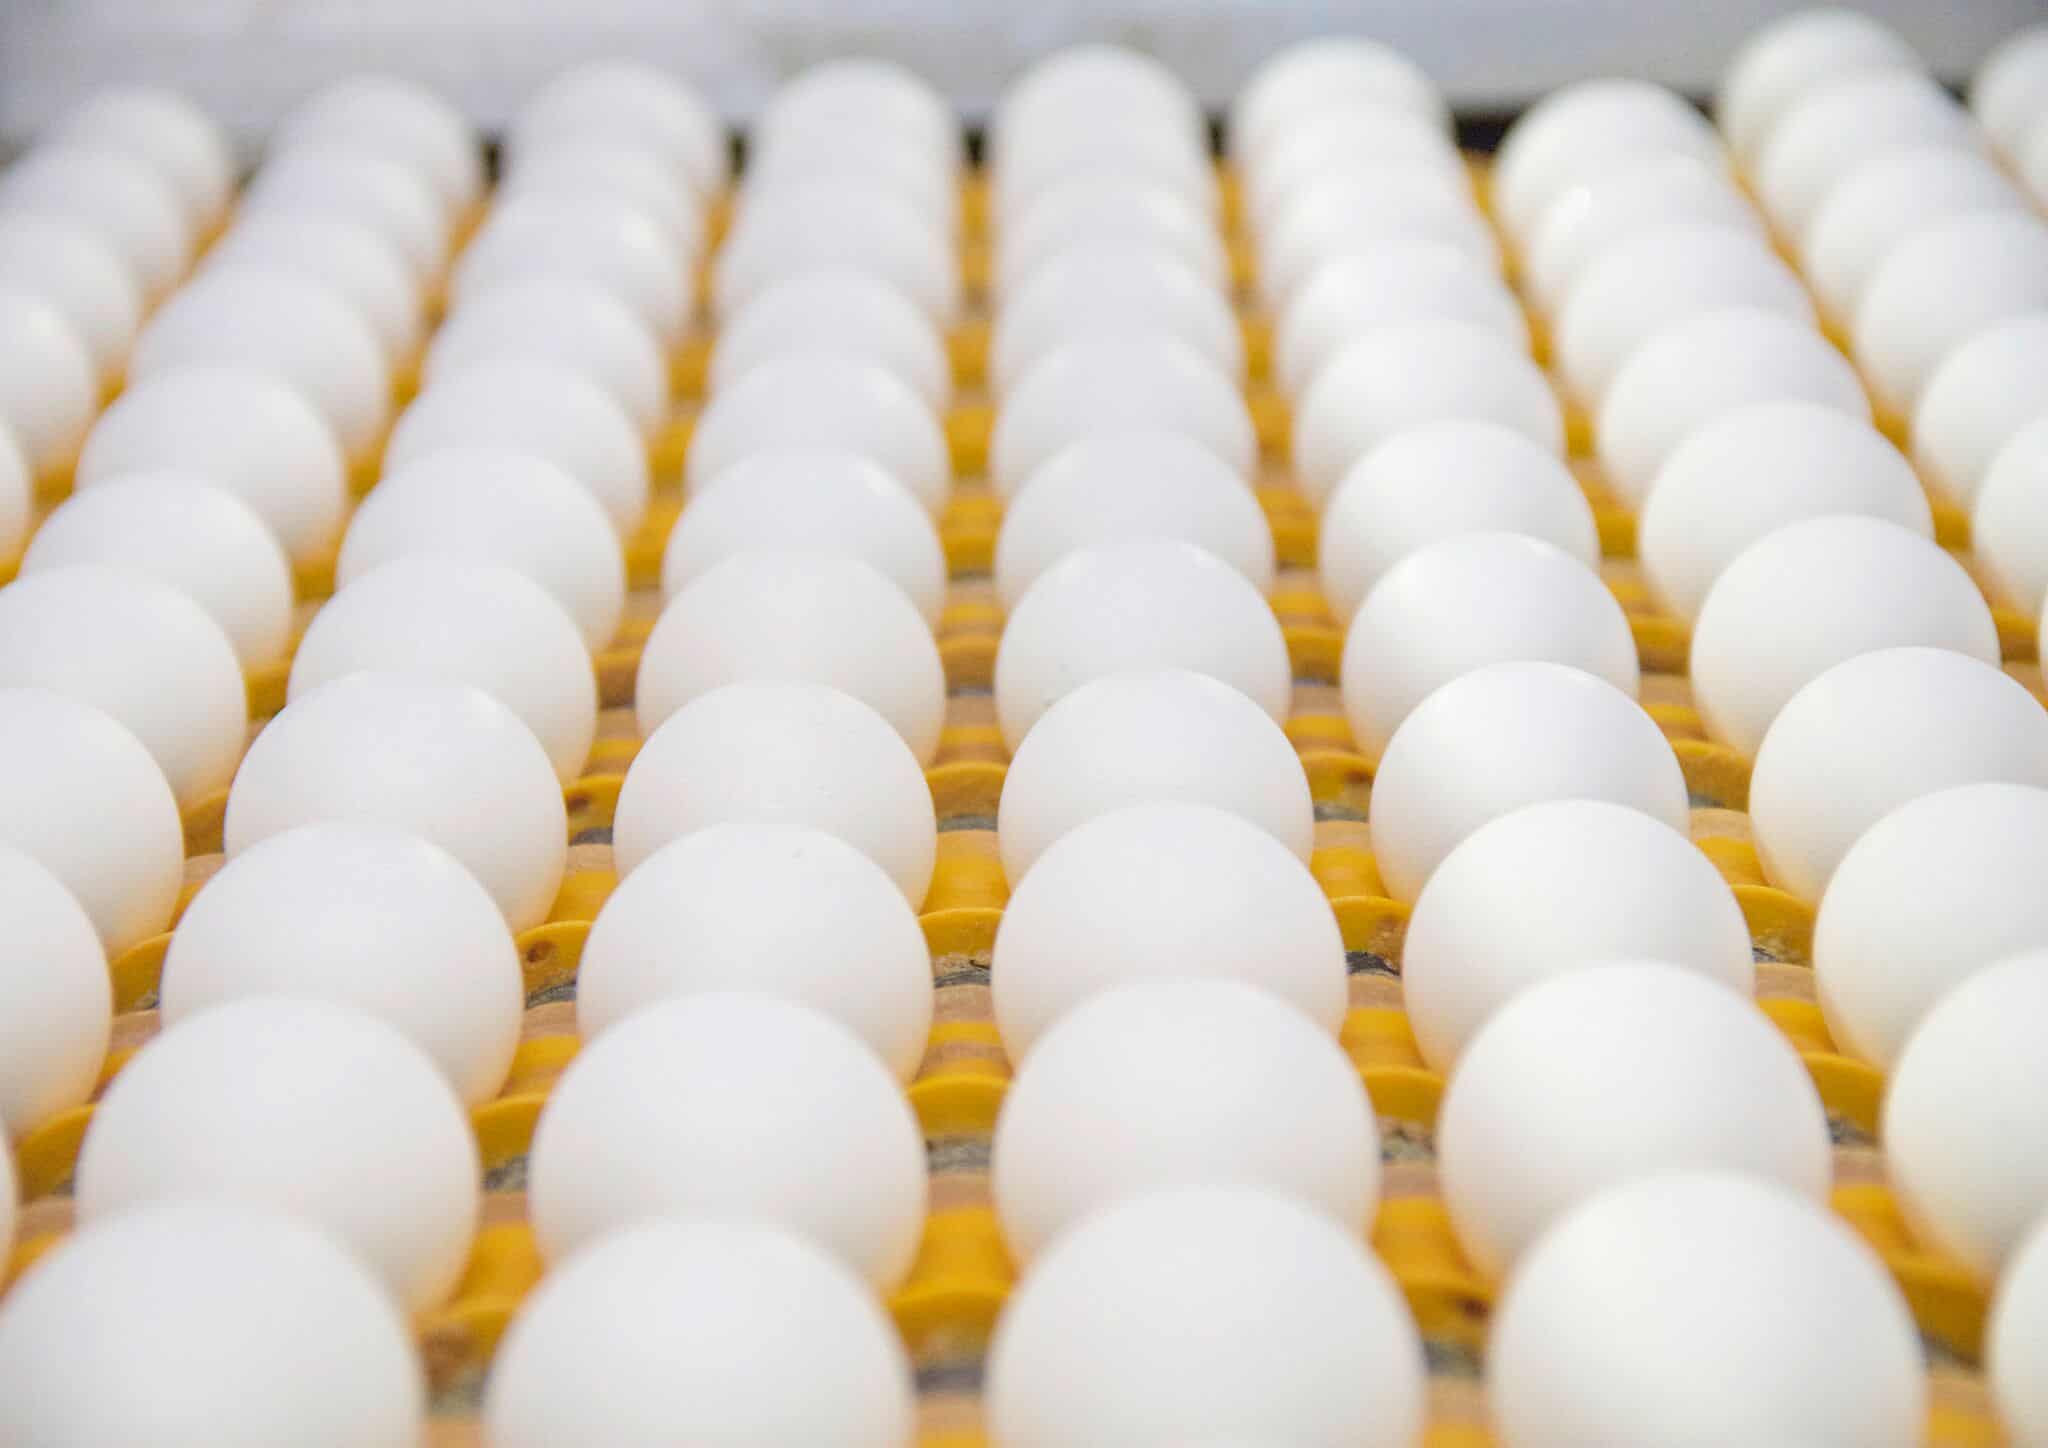 Investointituki vahvistaa kananmunatalon kilpailukykyä